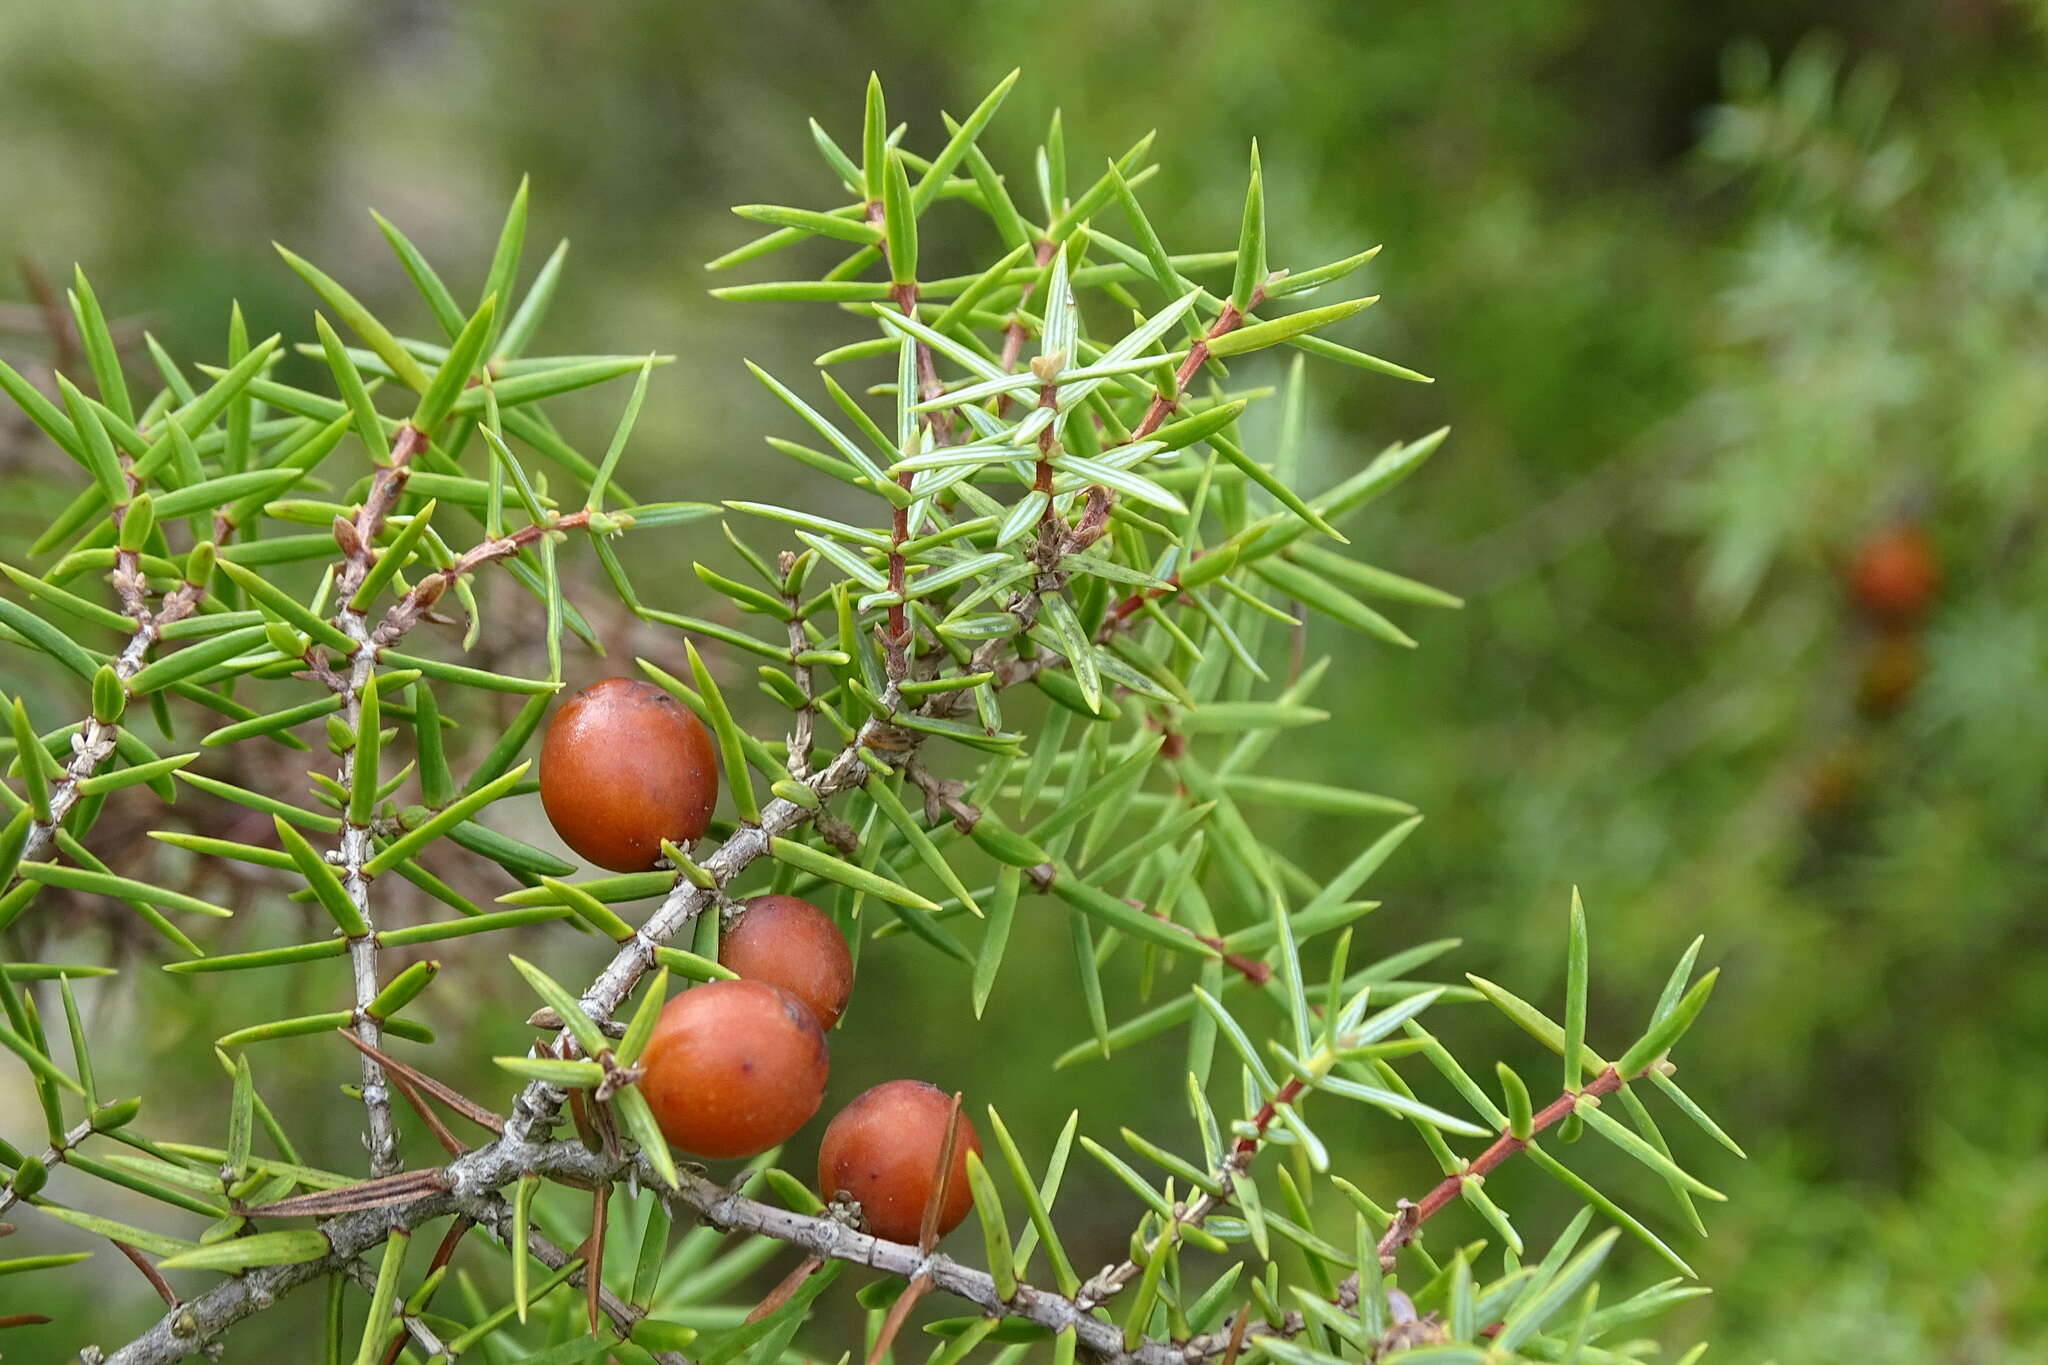 Imagem de Juniperus oxycedrus L.